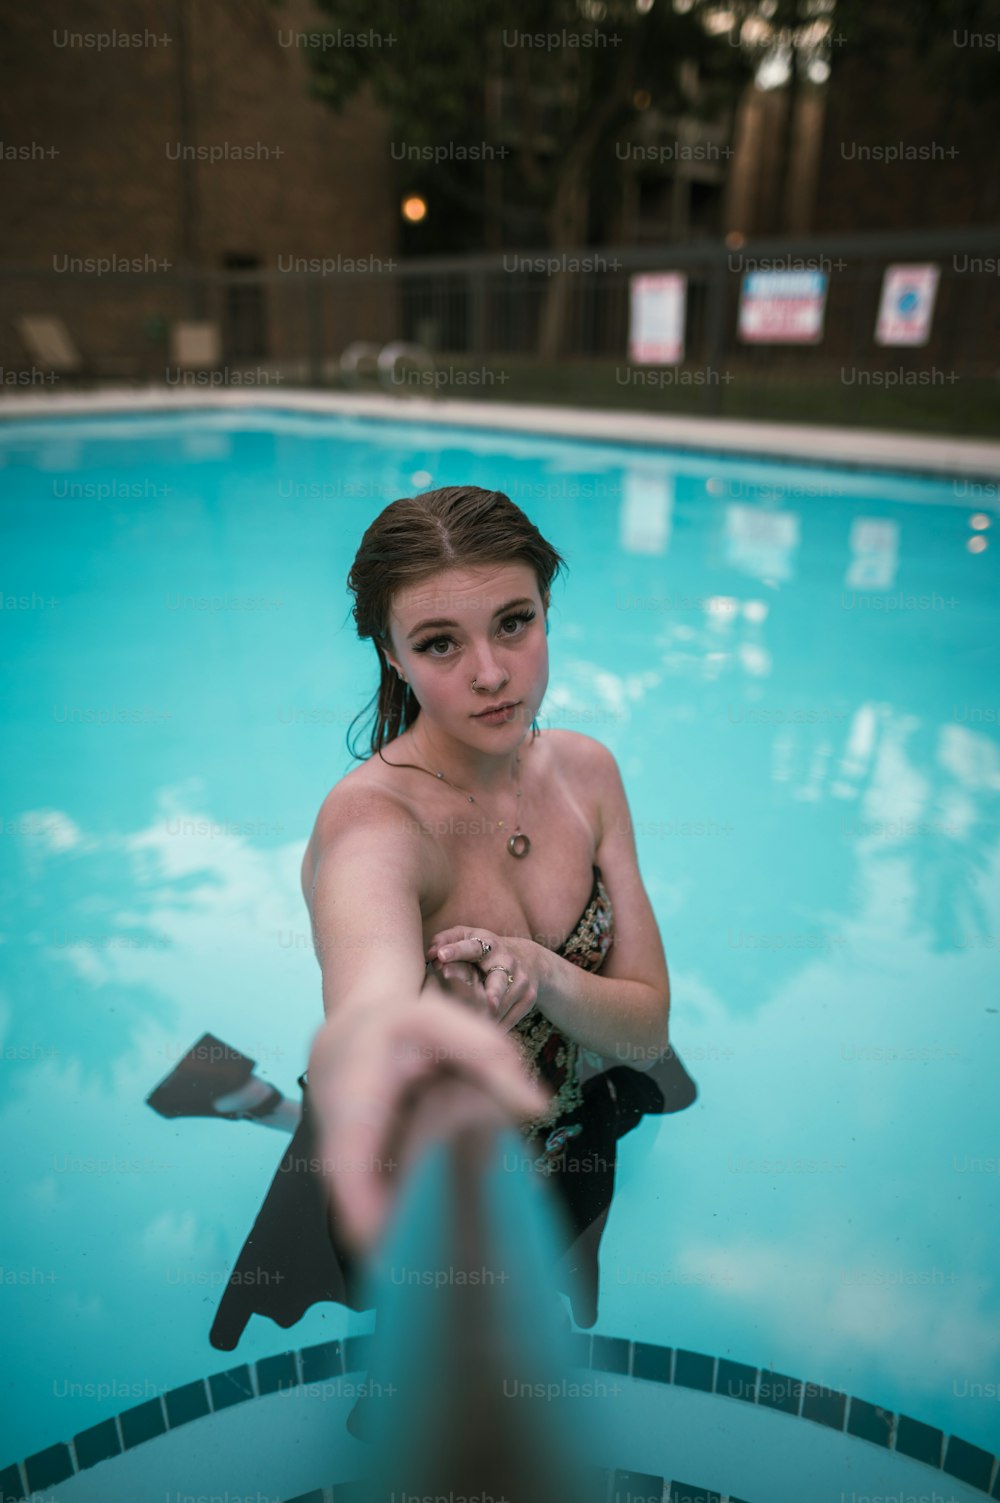 eine Frau im Badeanzug, die in einem Pool steht